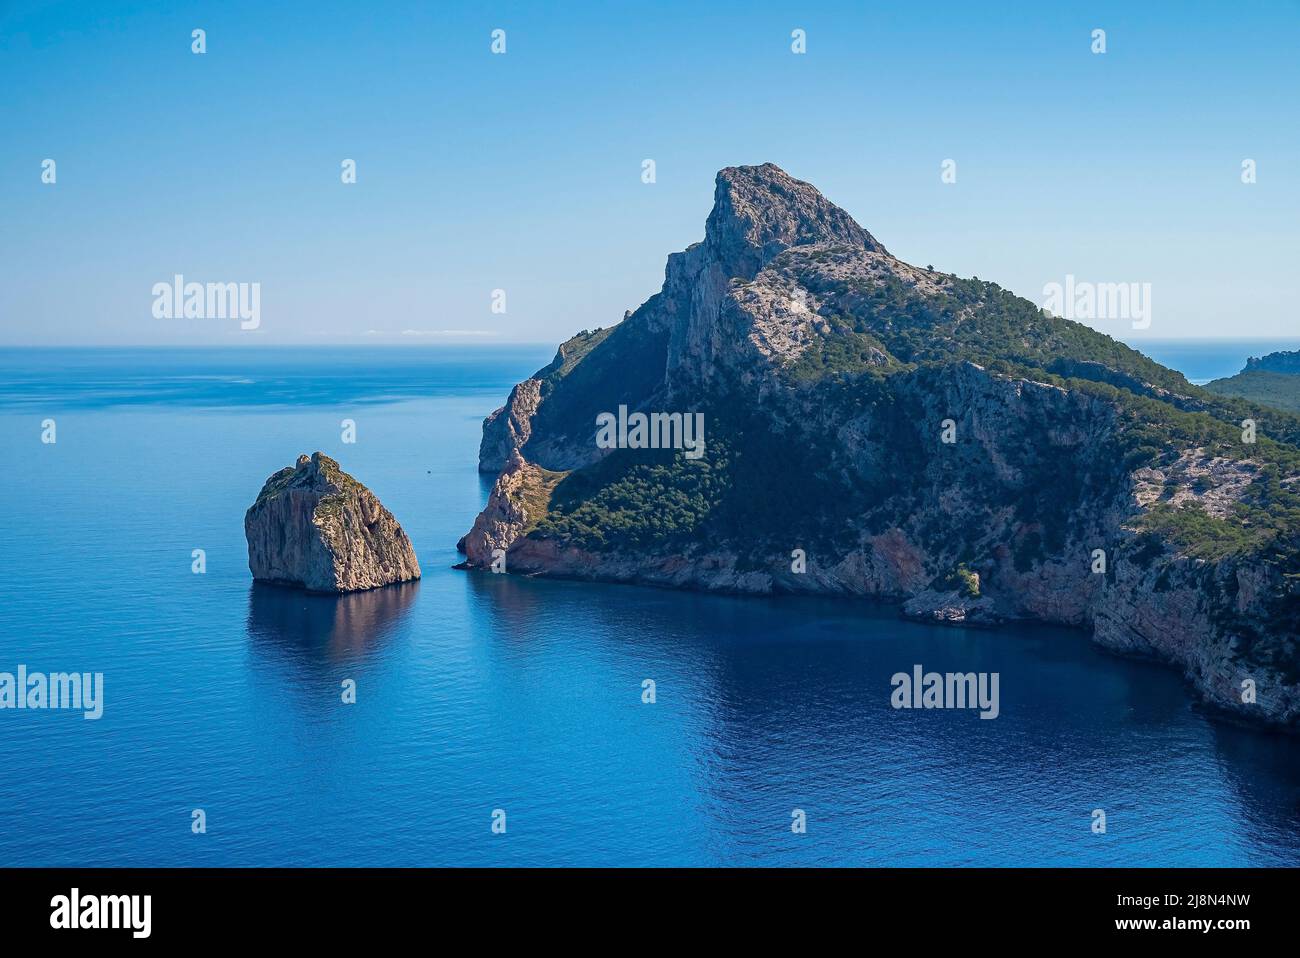 Magnifique vue panoramique sur les paysages marins méditerranéens et la falaise rocheuse contre le ciel bleu Banque D'Images